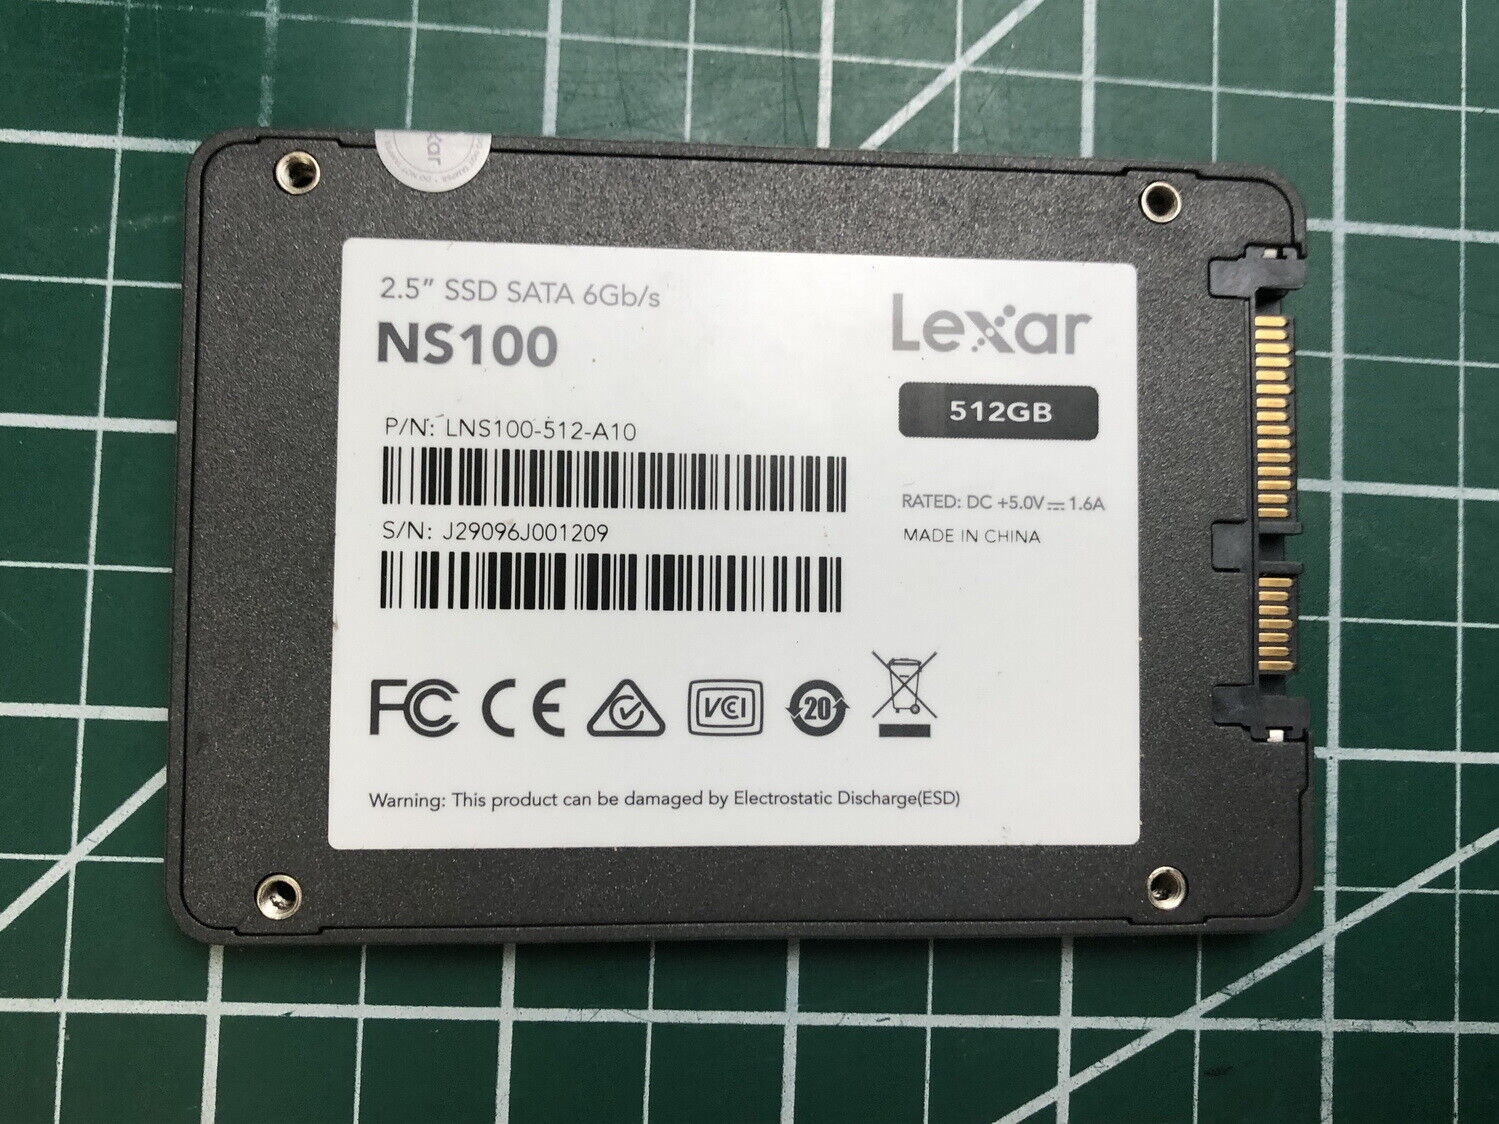 Lexar NS100 2.5” 512GB (6Gb/s) SSD Solid State Drive LNS100-512-A10